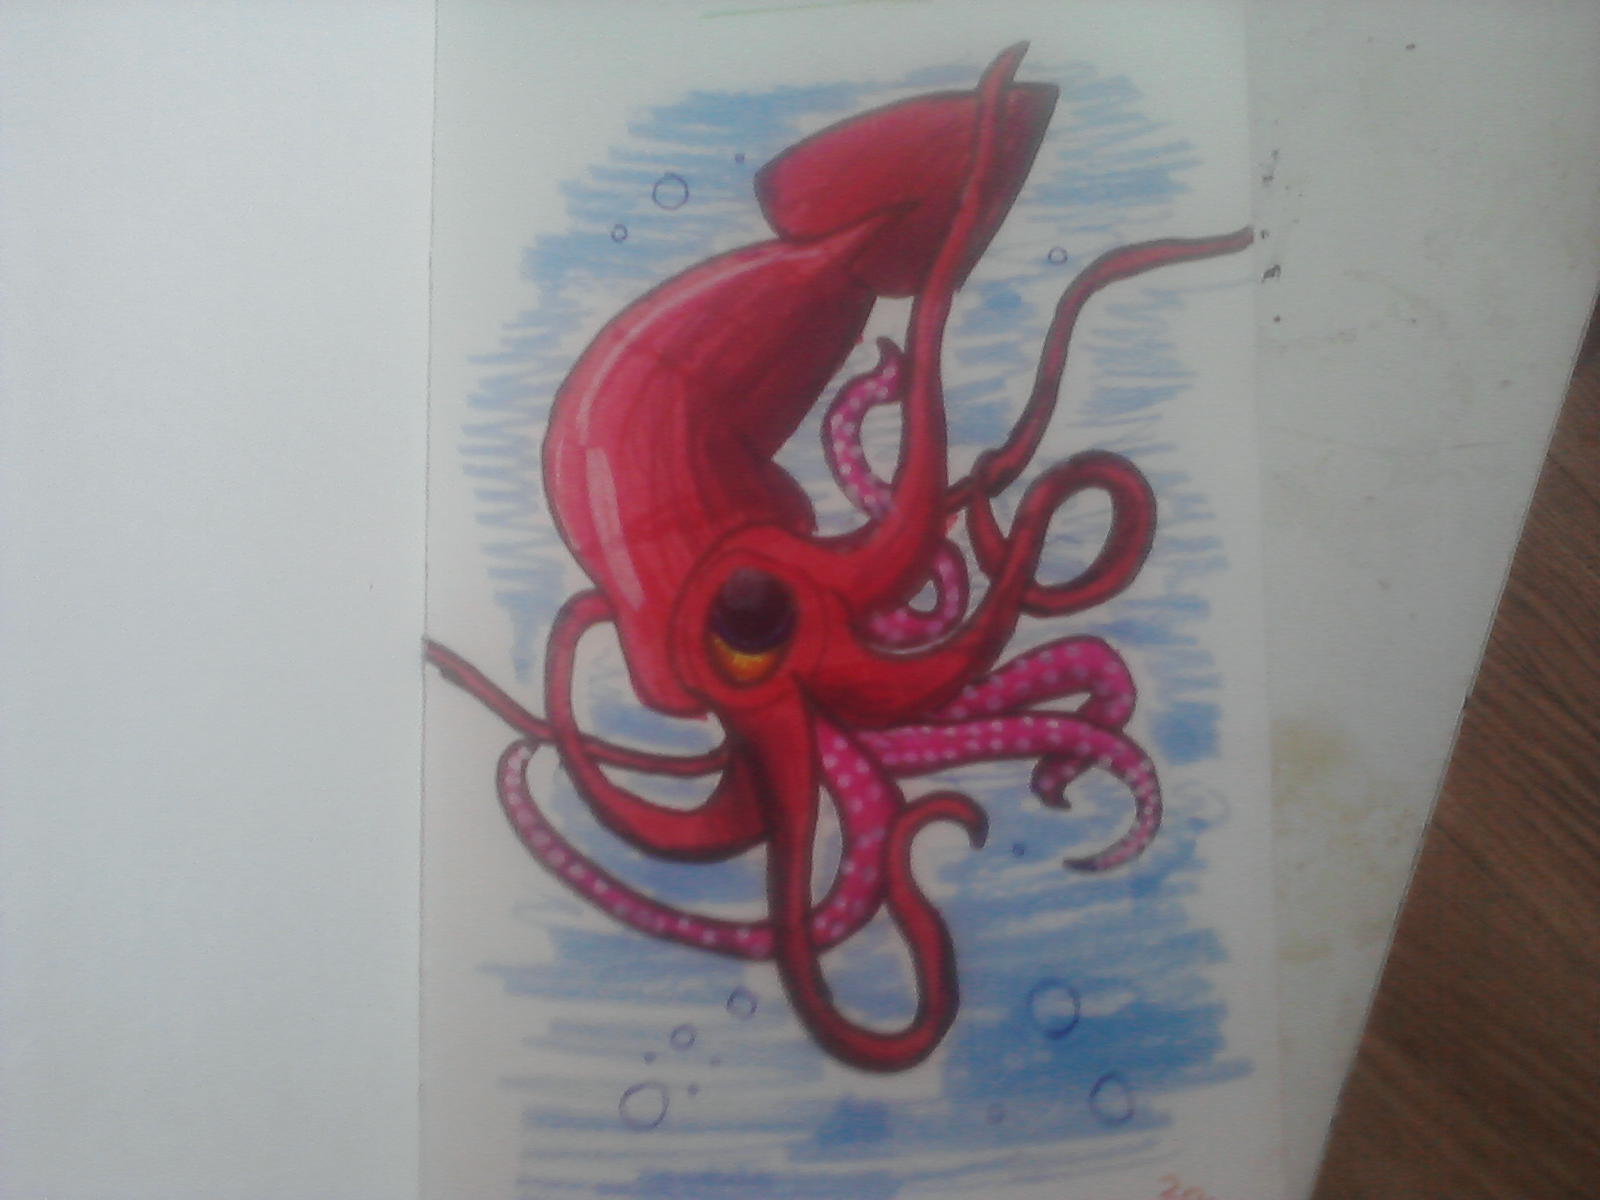 cartoon squid